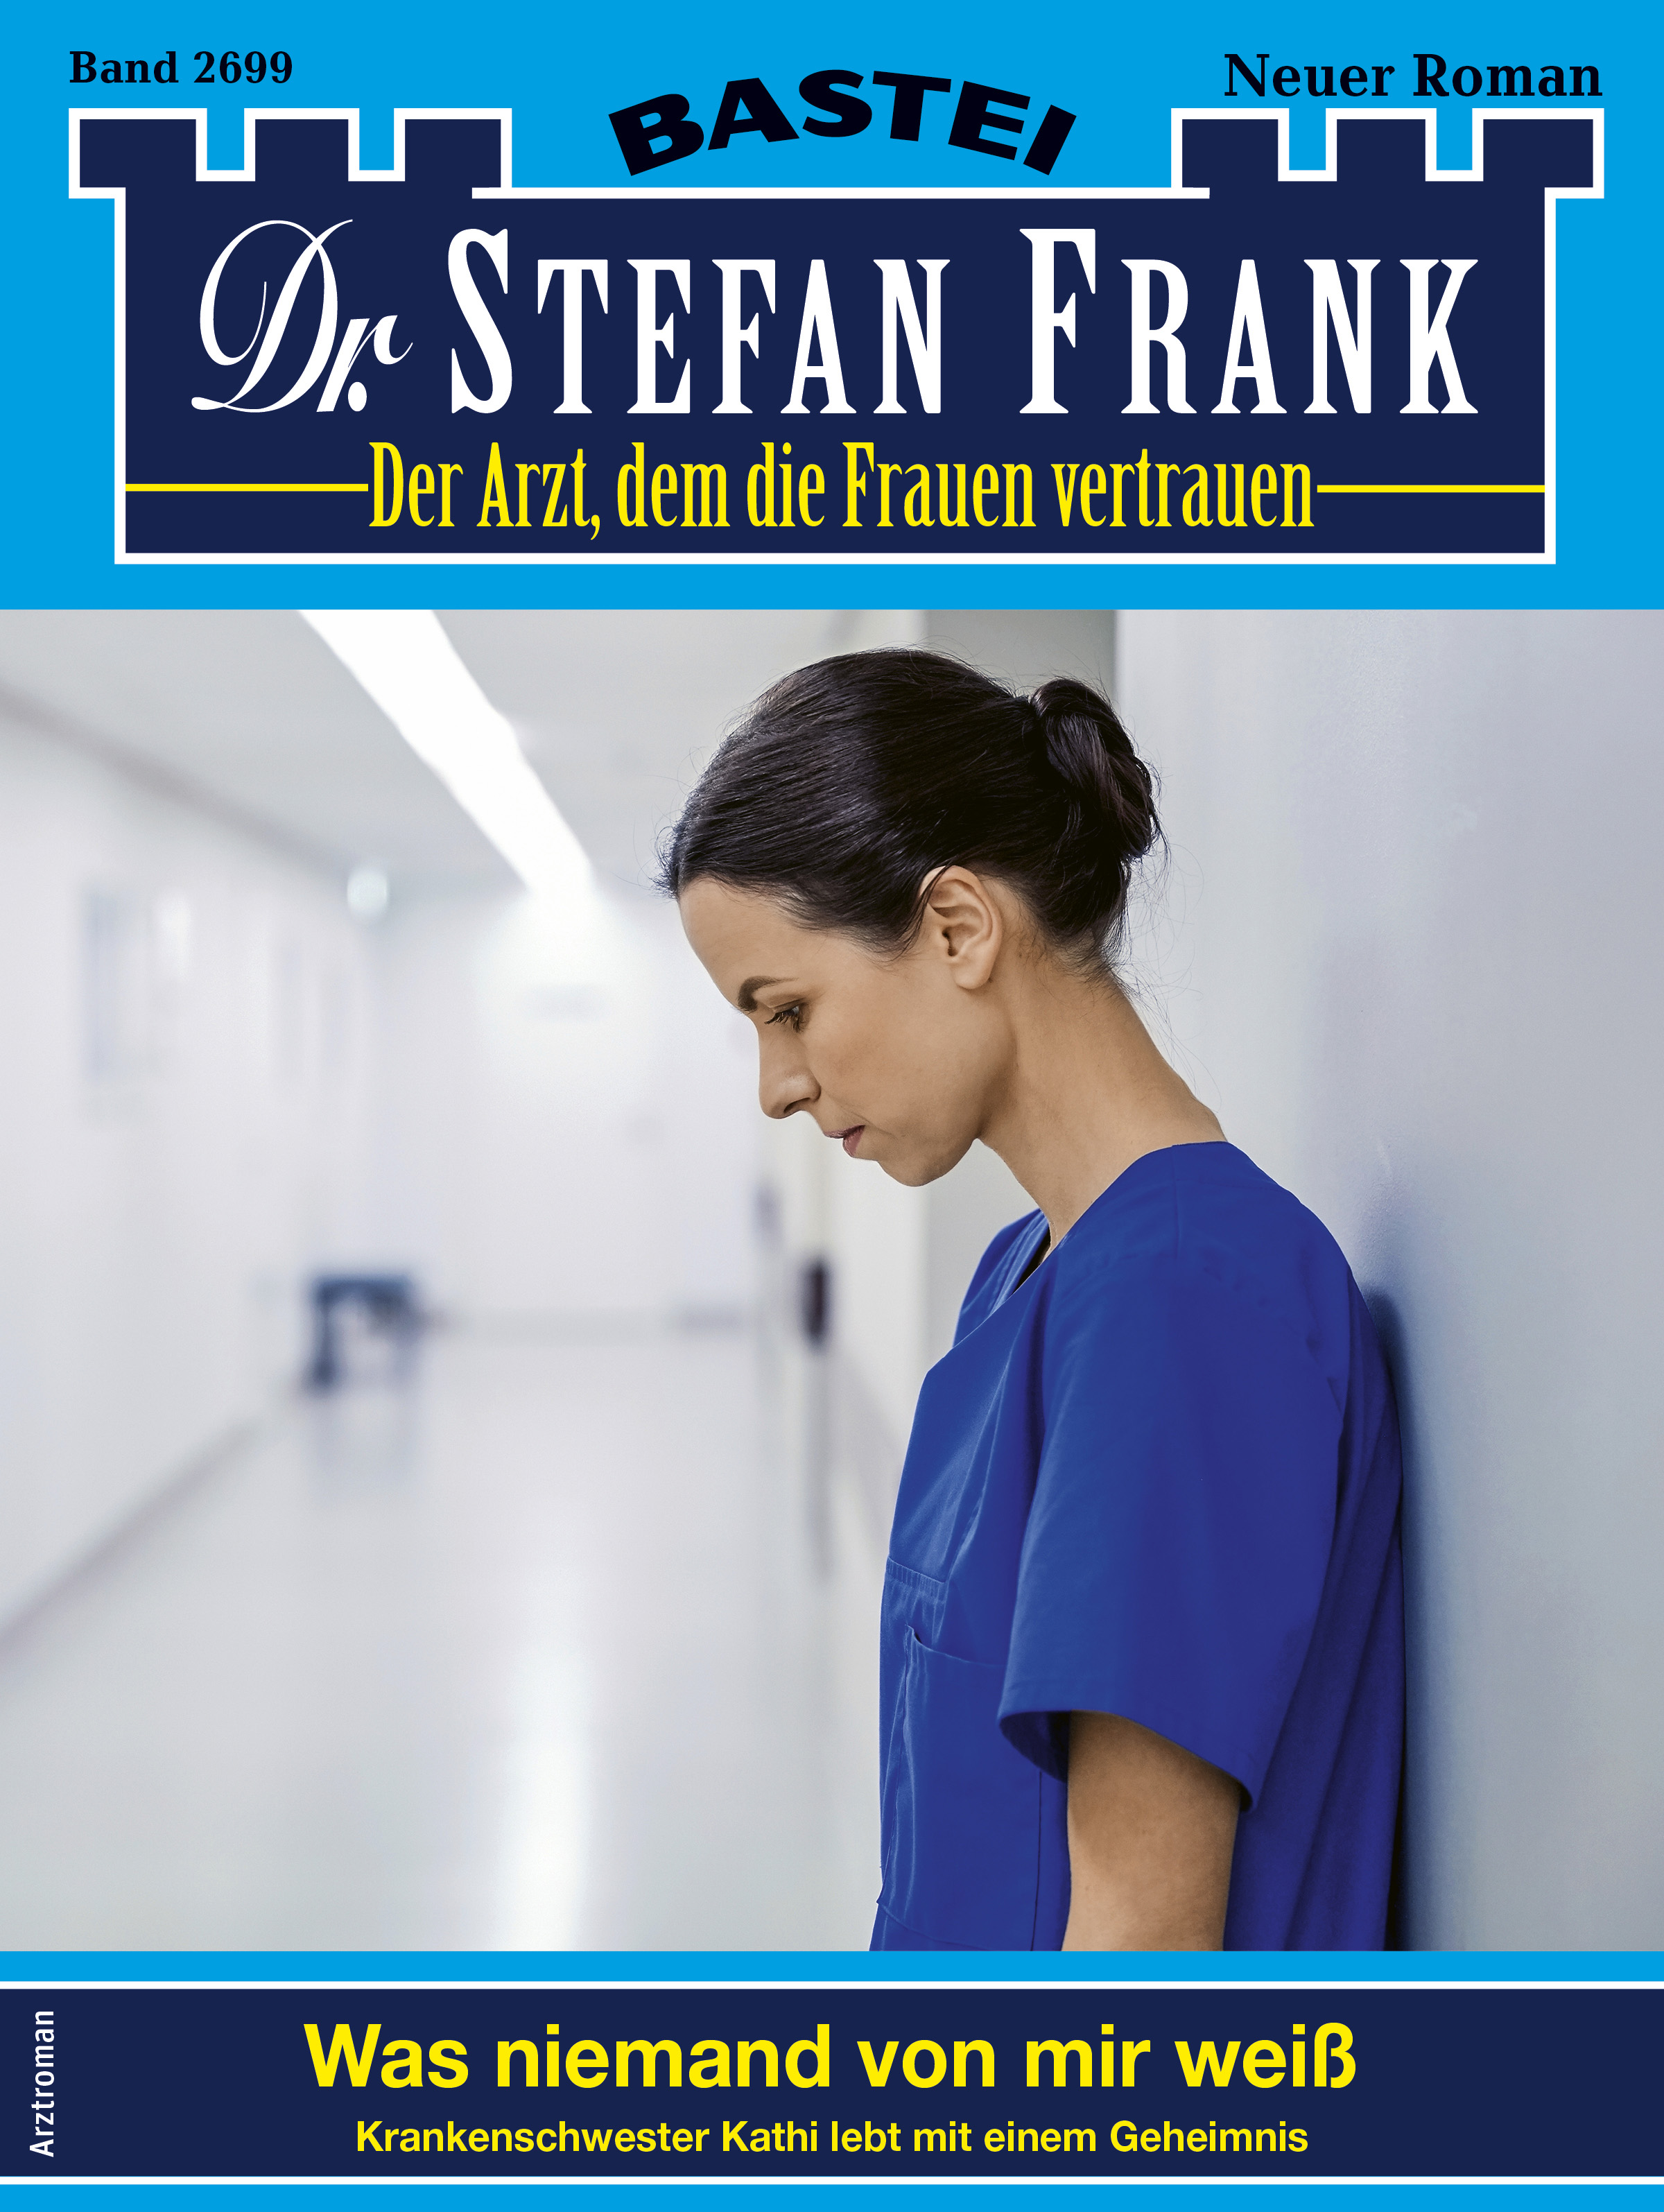 Dr. Stefan Frank 2699